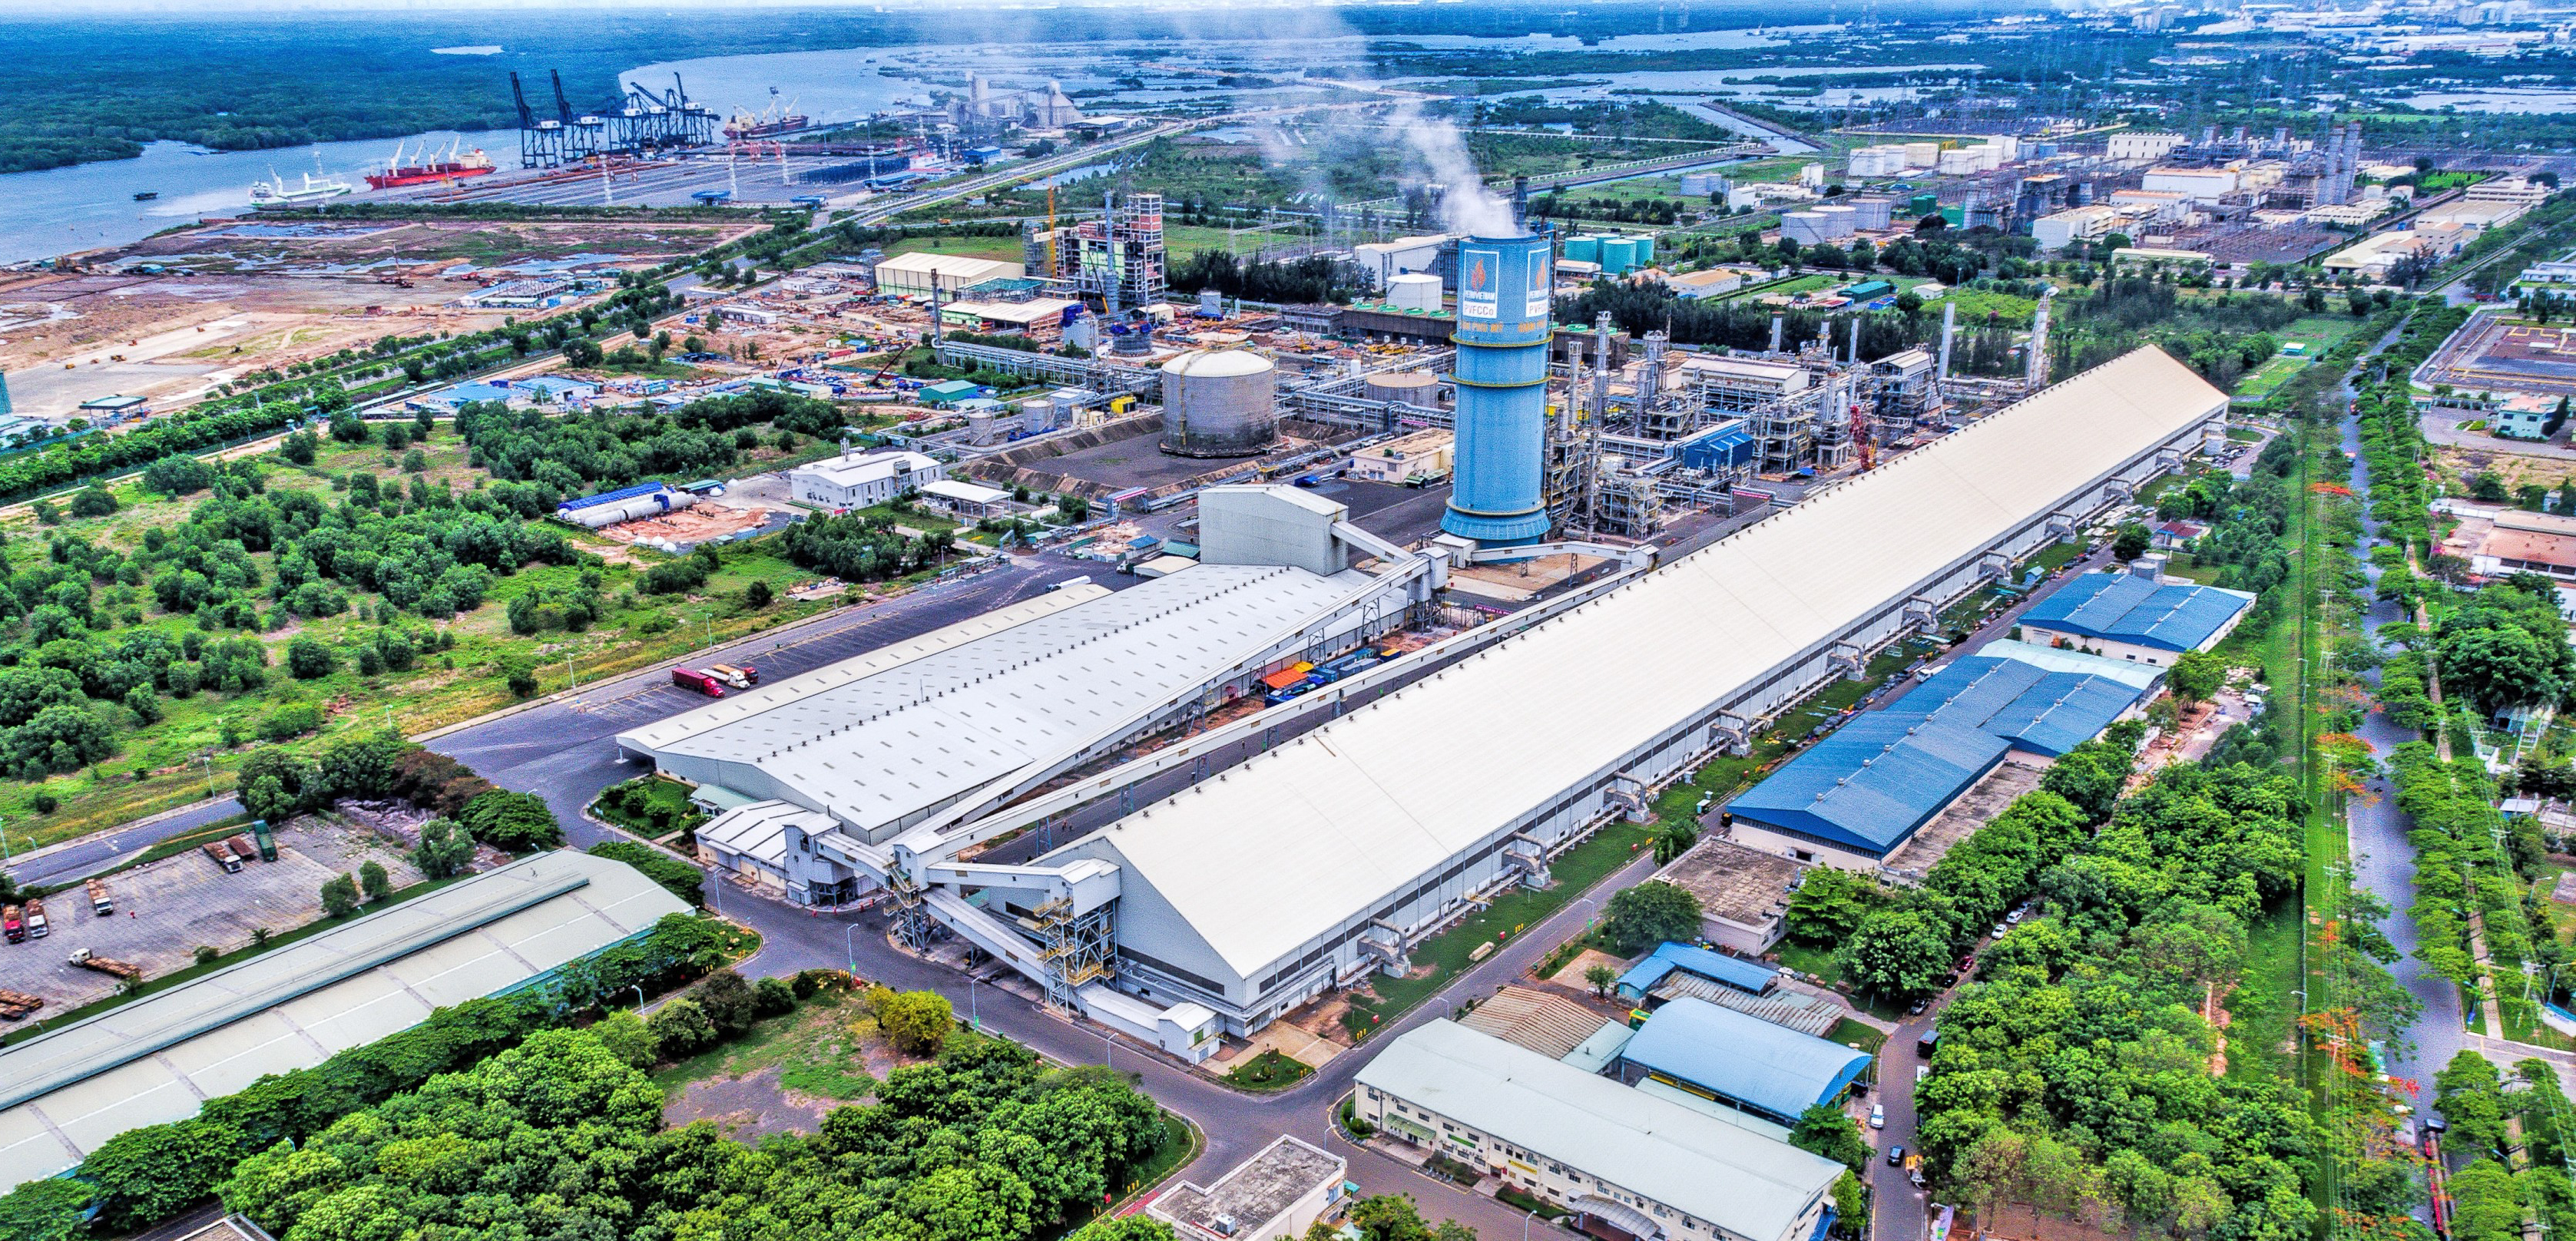 hình chụp flycam vũng tàu - Nhà máy Đạm Phú Mỹ từ góc nhìn Flycam nhà xưởng xí nghiệp